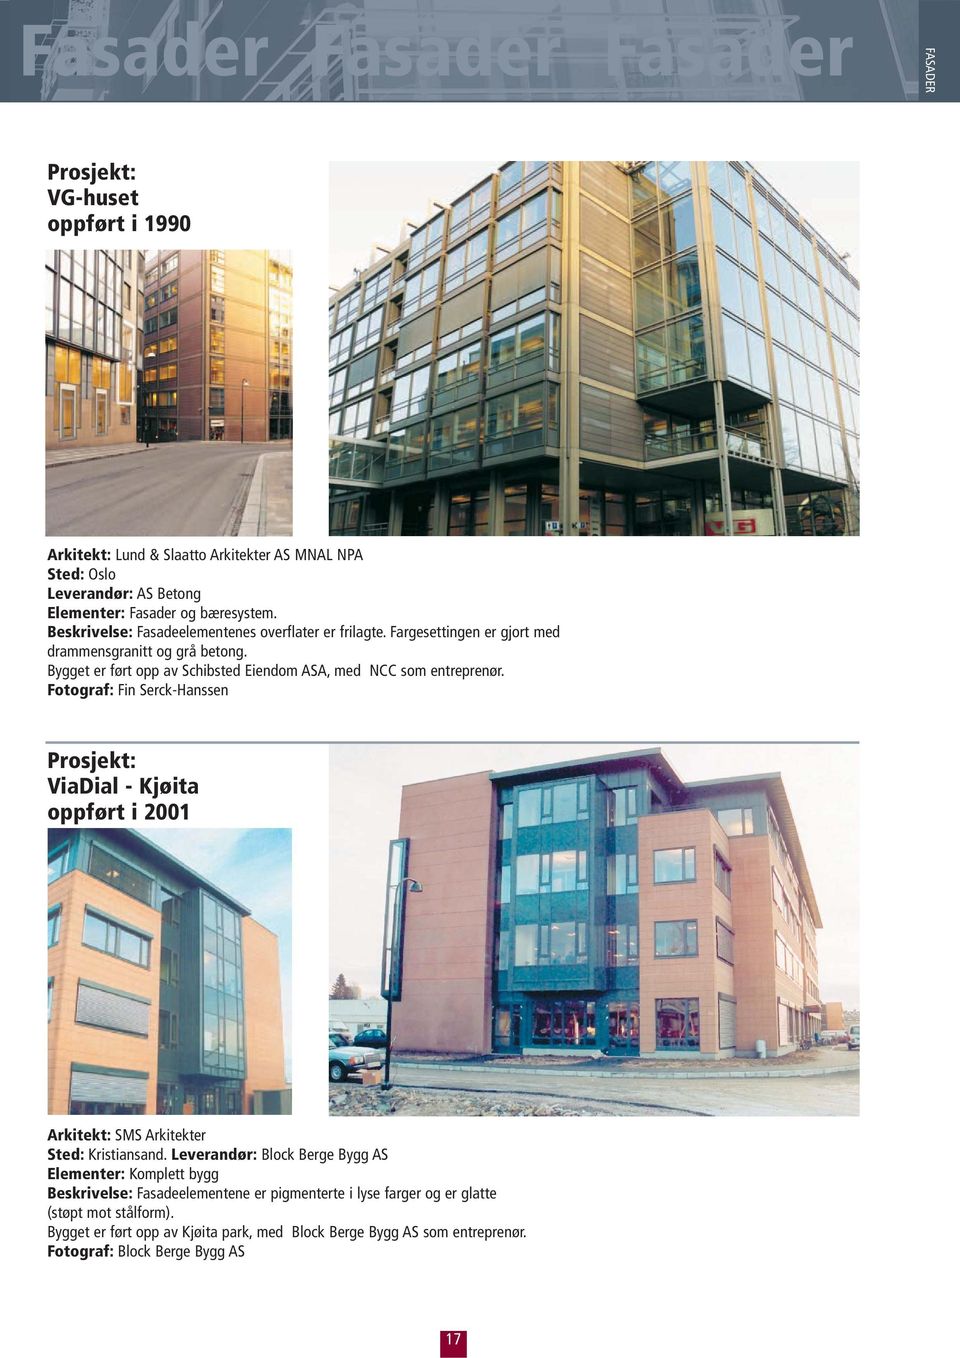 Bygget er ført opp av Schibsted Eiendom ASA, med NCC som entreprenør. ViaDial - Kjøita oppført i 2001 Arkitekt: SMS Arkitekter Sted: Kristiansand.